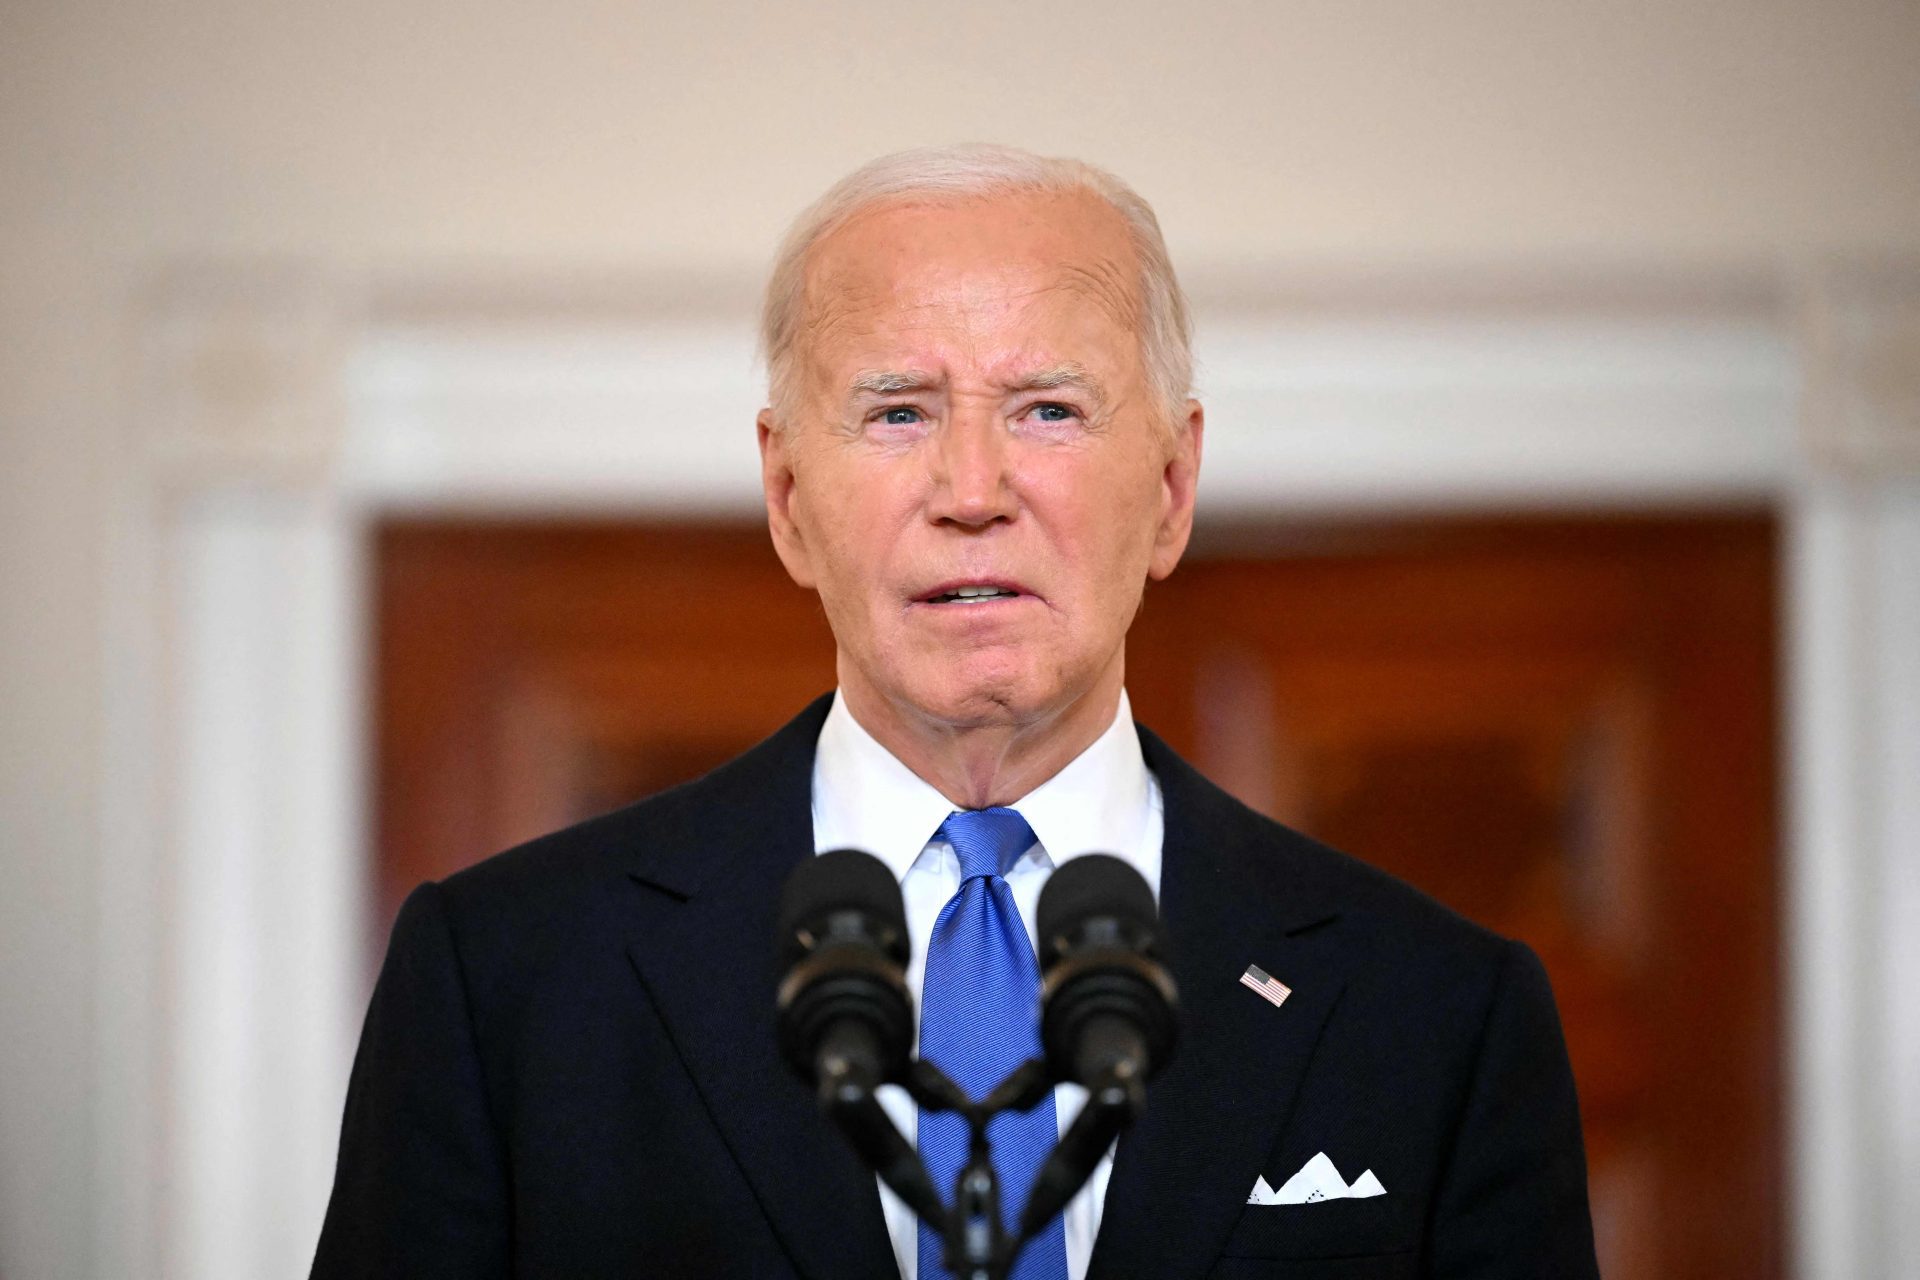 Biden refuse de quitter la course présidentielle, soutien des gouverneurs démocrates